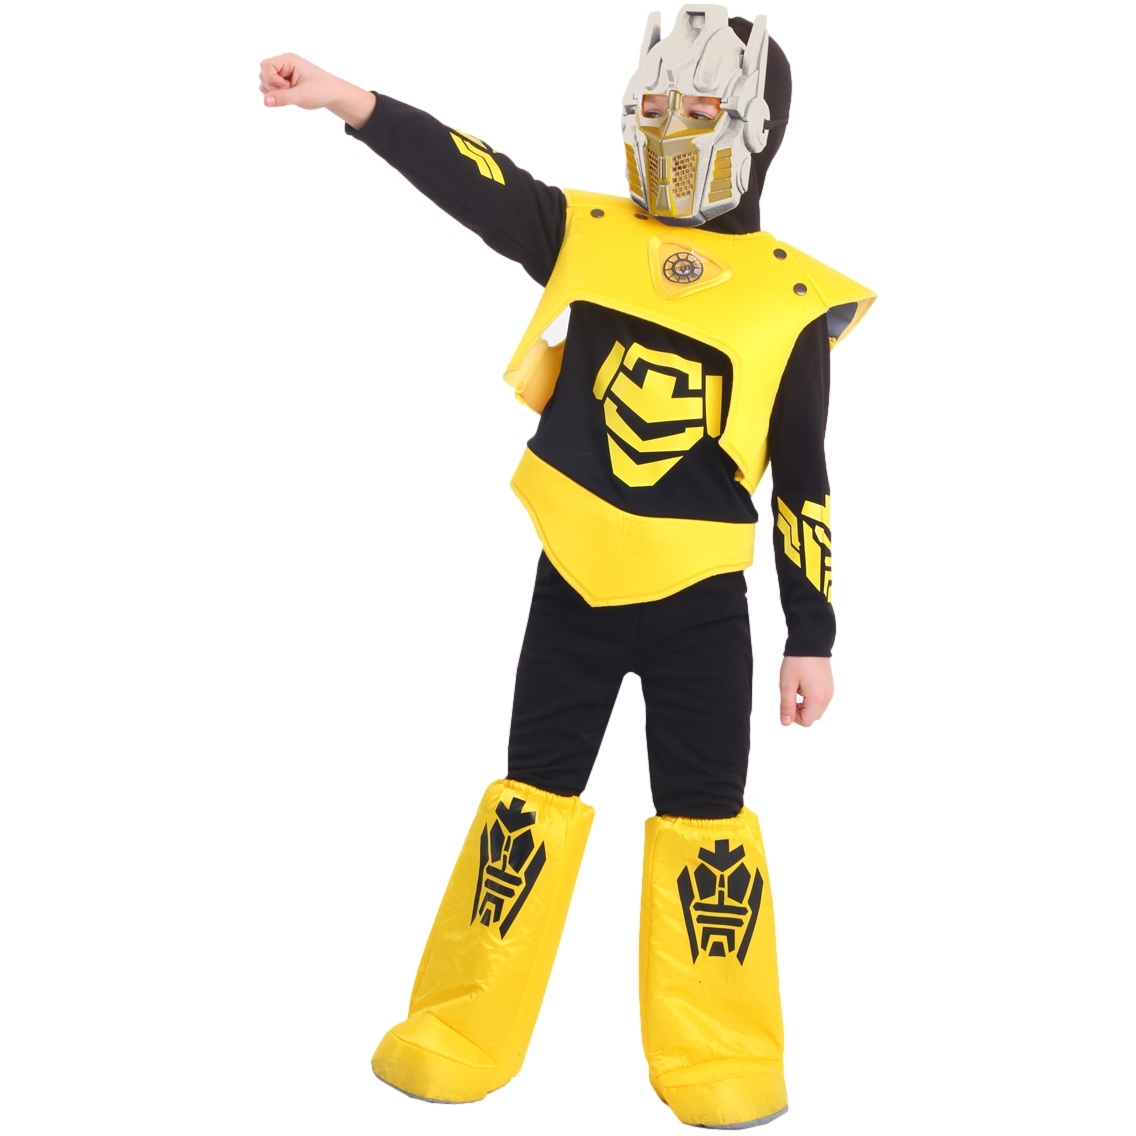 Карнавальный костюм "Робот" (рубашка с капюшоном,брюки,жилет,ботинки,маска) р. 110-56